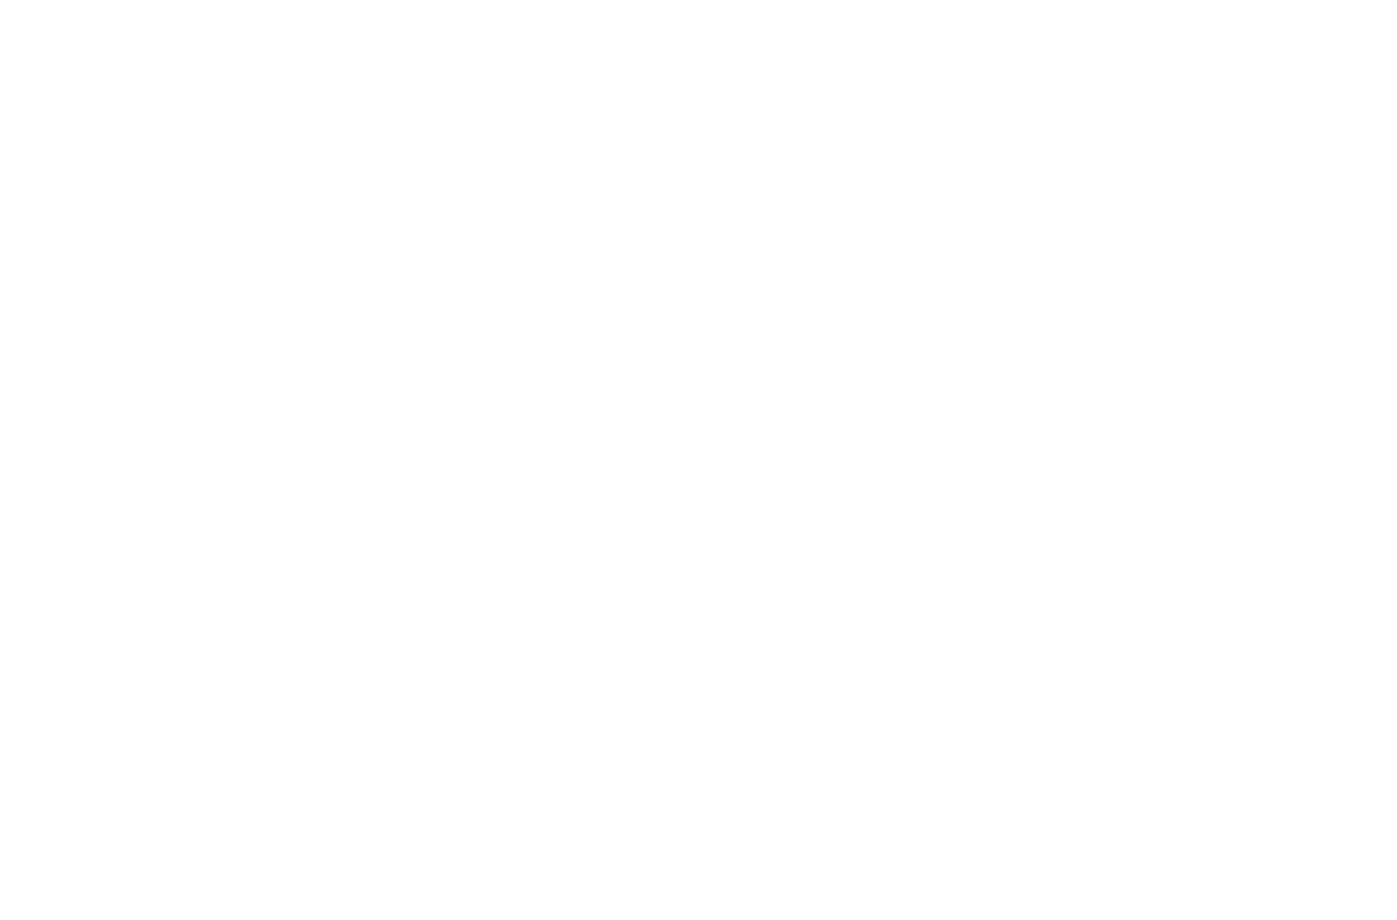 Miembro asociado a la Cámara de Comercio de Granada